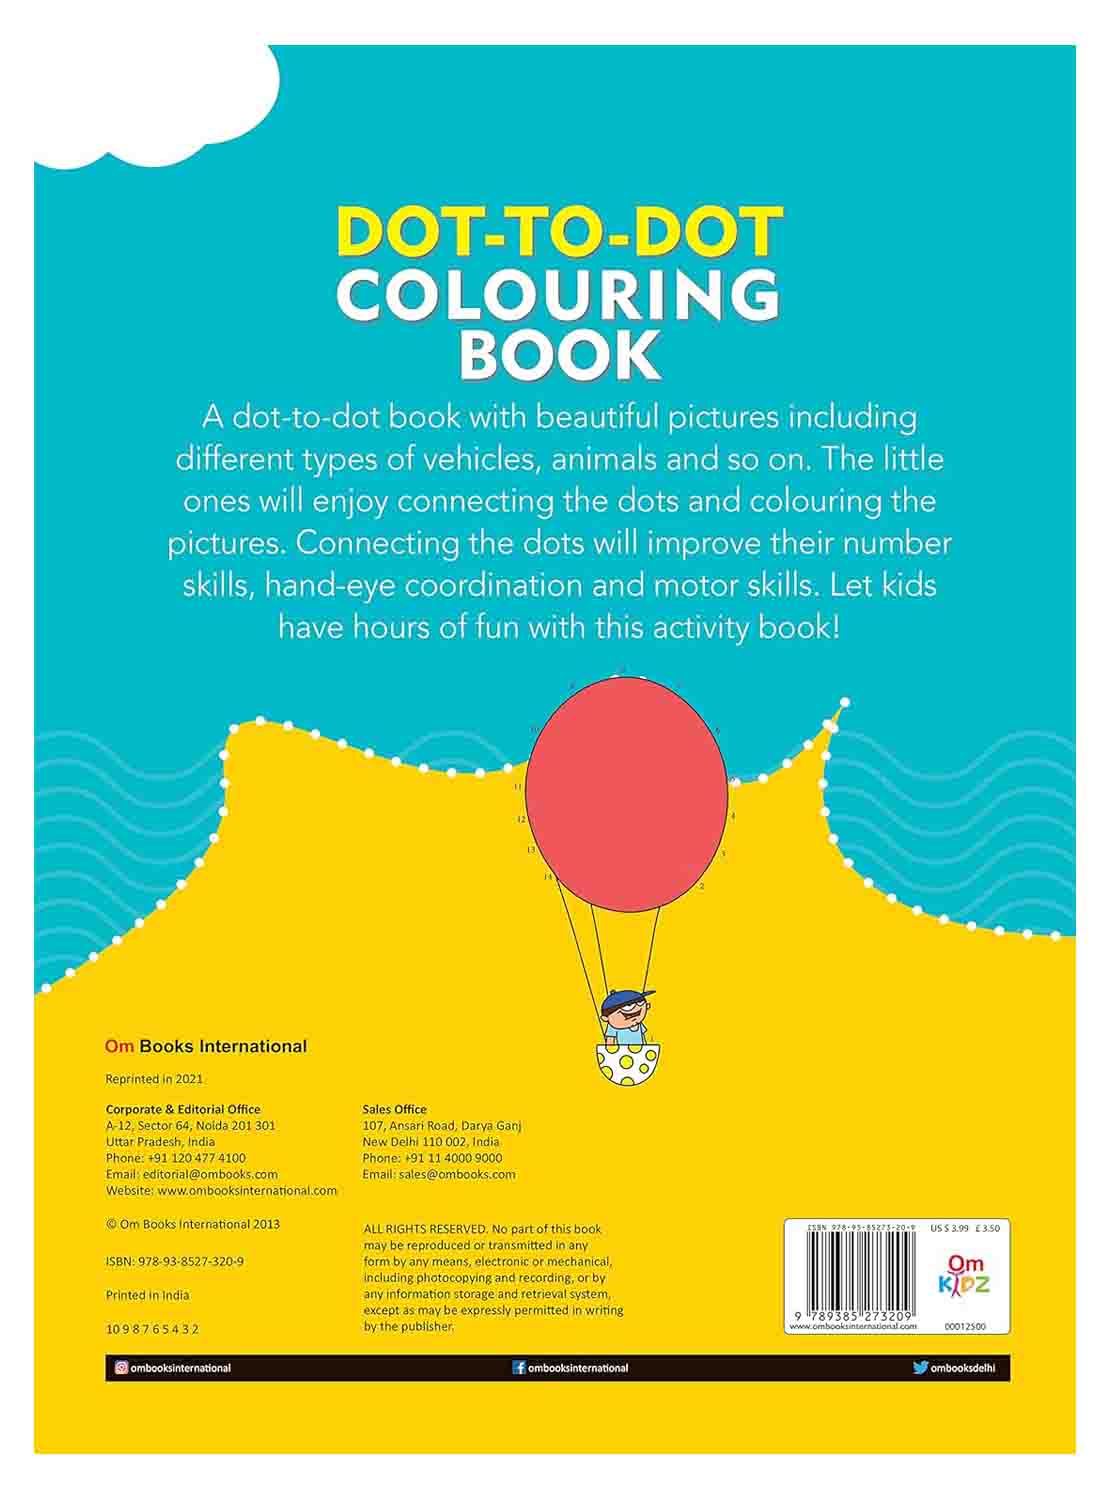 Om Books International Dot-to-Dot Colouring Book Level 1 - 9789385273209